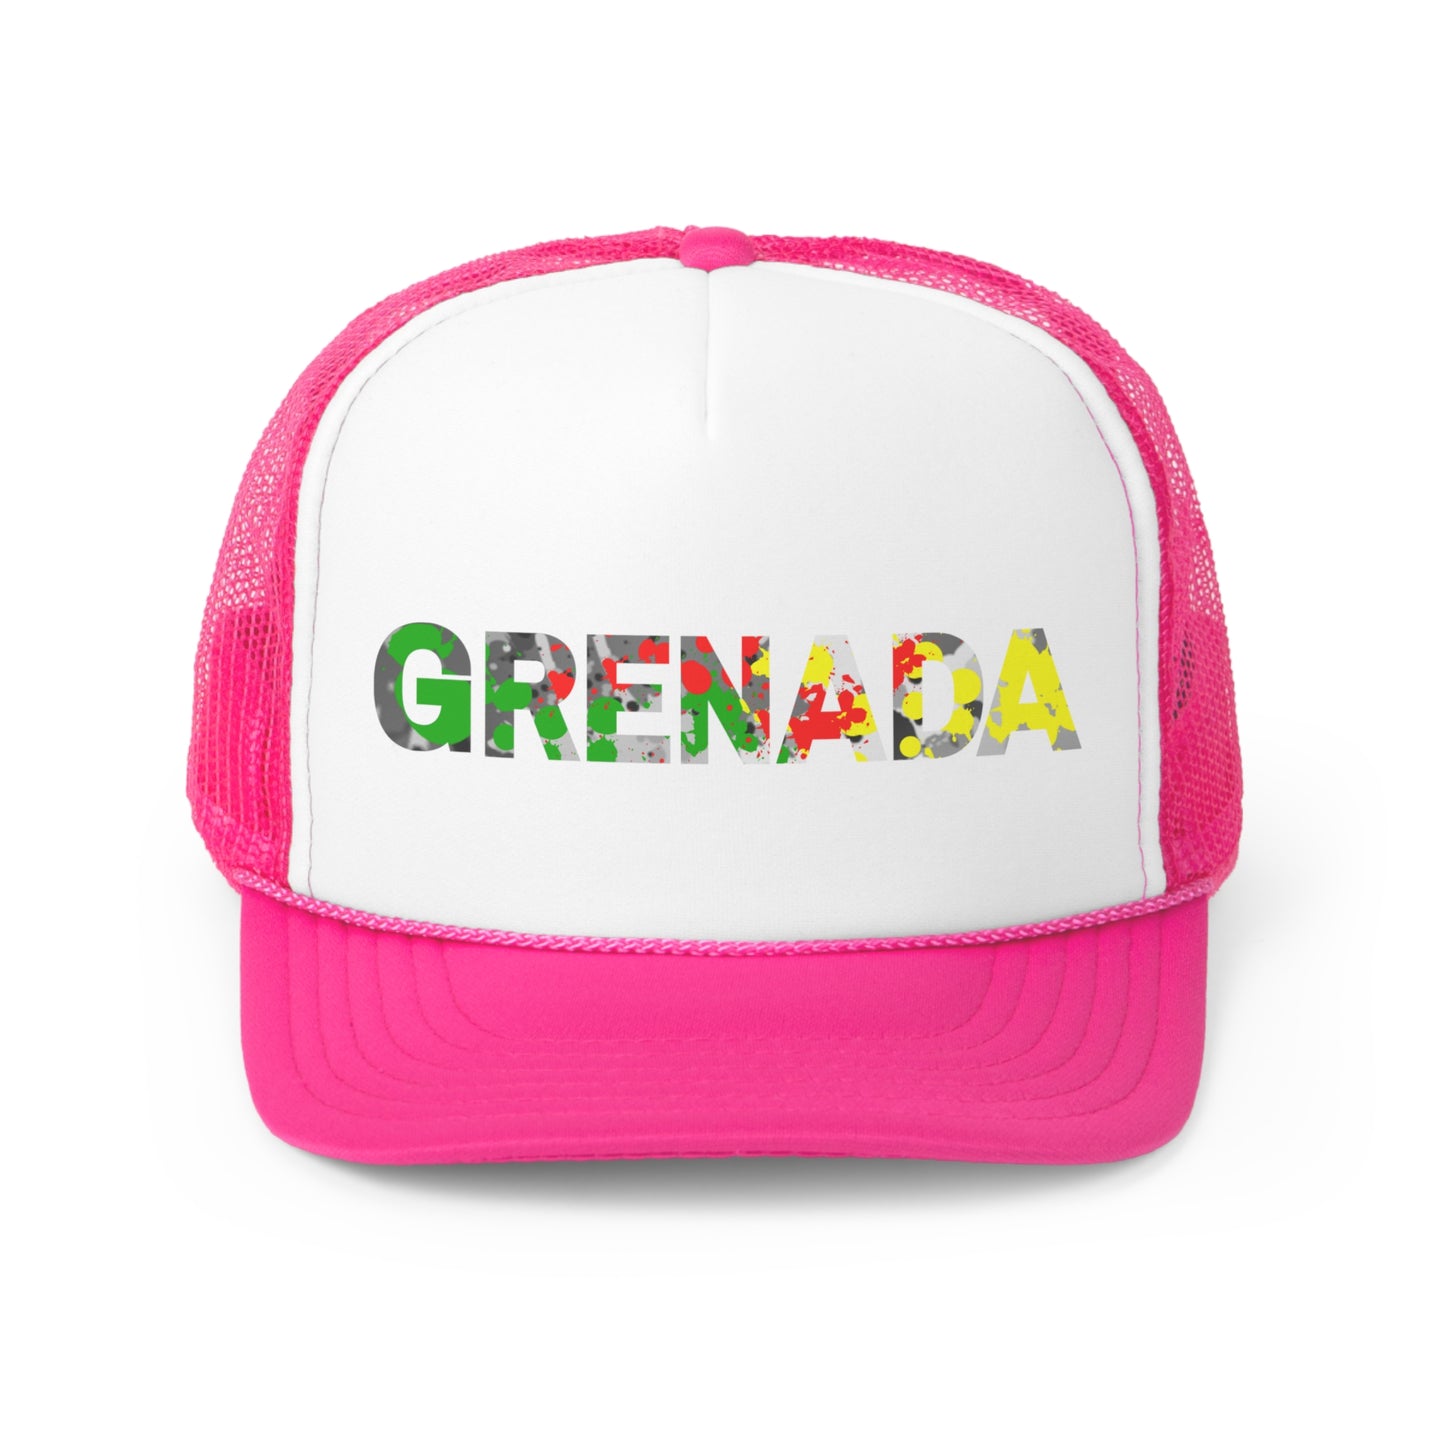 Grenada Trucker Caps